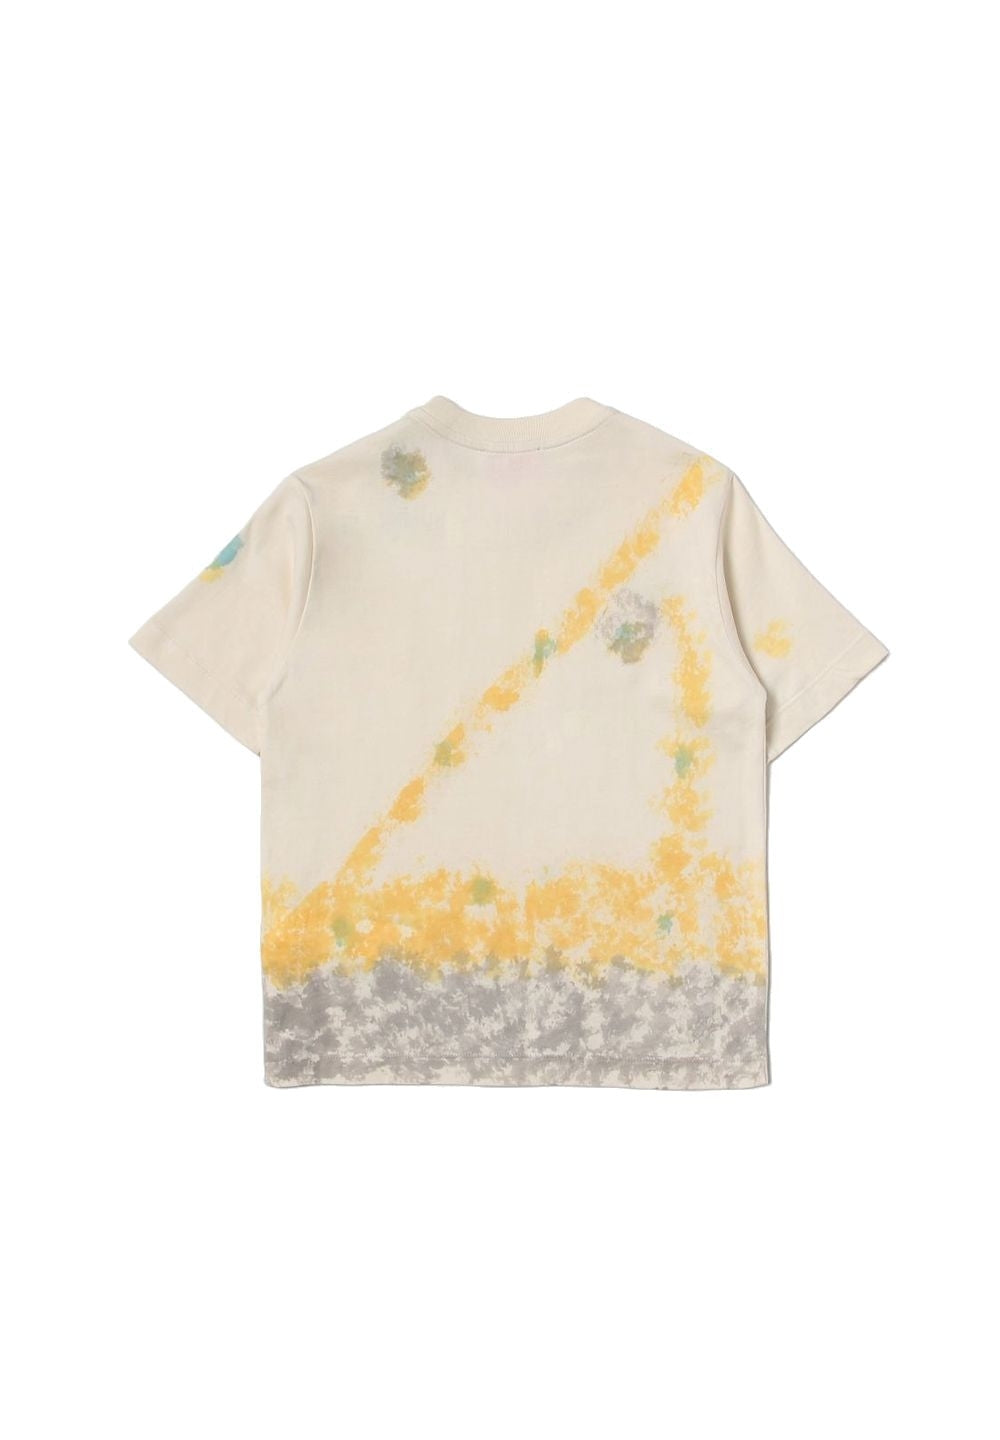 T-shirt beige per bambino - Primamoda kids